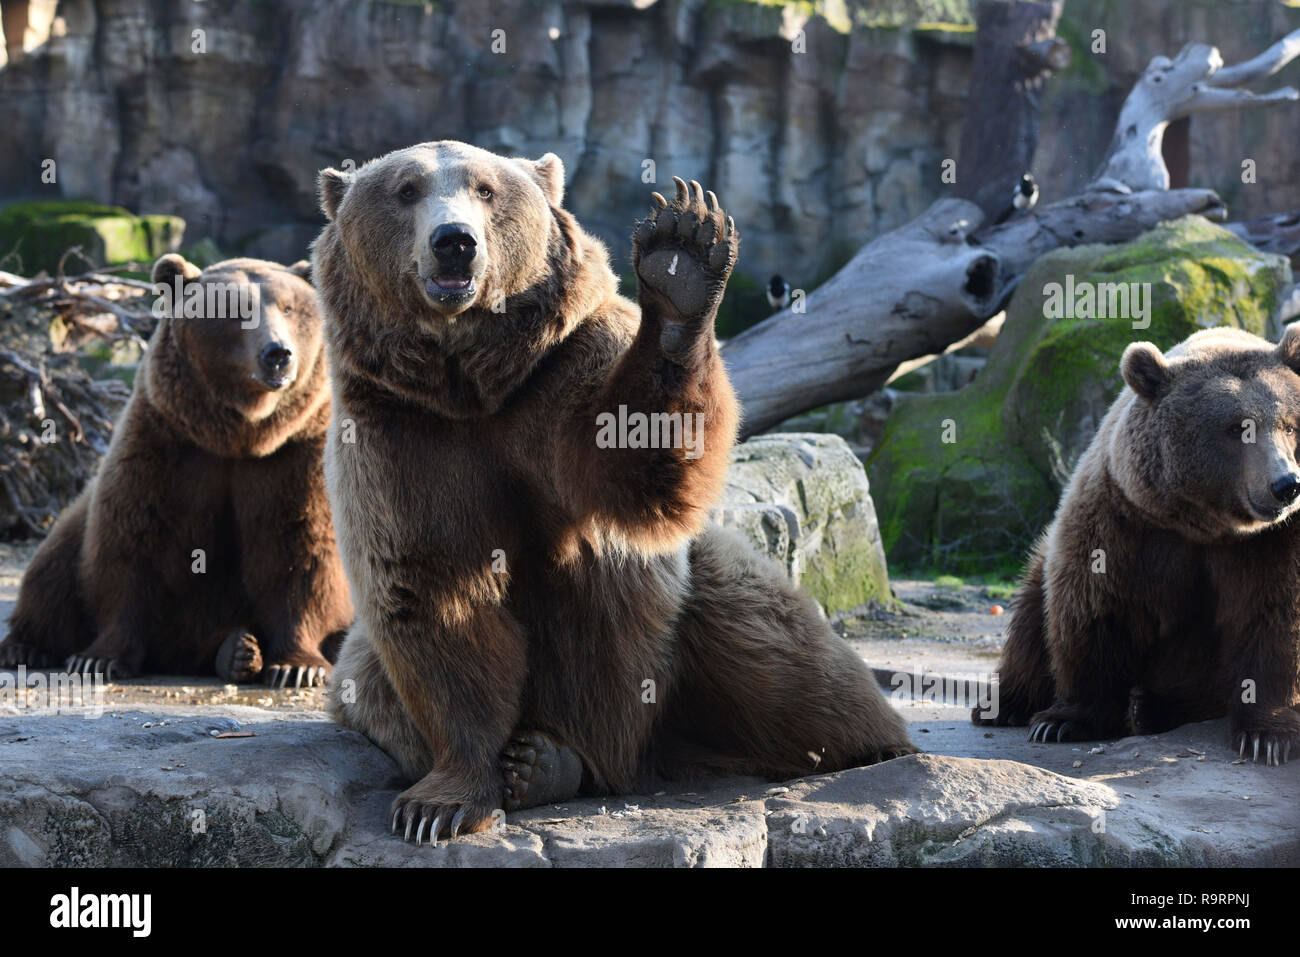 Madrid, Madrid, Spanien. 27 Dez, 2018. Drei Braunbären gesehen Warten auf das Essen im Zoo Madrid. Der Braunbär (Ursus arctos) ist die größte terrestrische Fleischesser. In der Wildnis es über viel im nördlichen Eurasien und Nordamerika verteilt wird. Es bleibt als Least Concern Arten von der IUCN mit einer Bevölkerung von etwa 200.000 aufgeführt. Quelle: John milner/SOPA Images/ZUMA Draht/Alamy leben Nachrichten Stockfoto